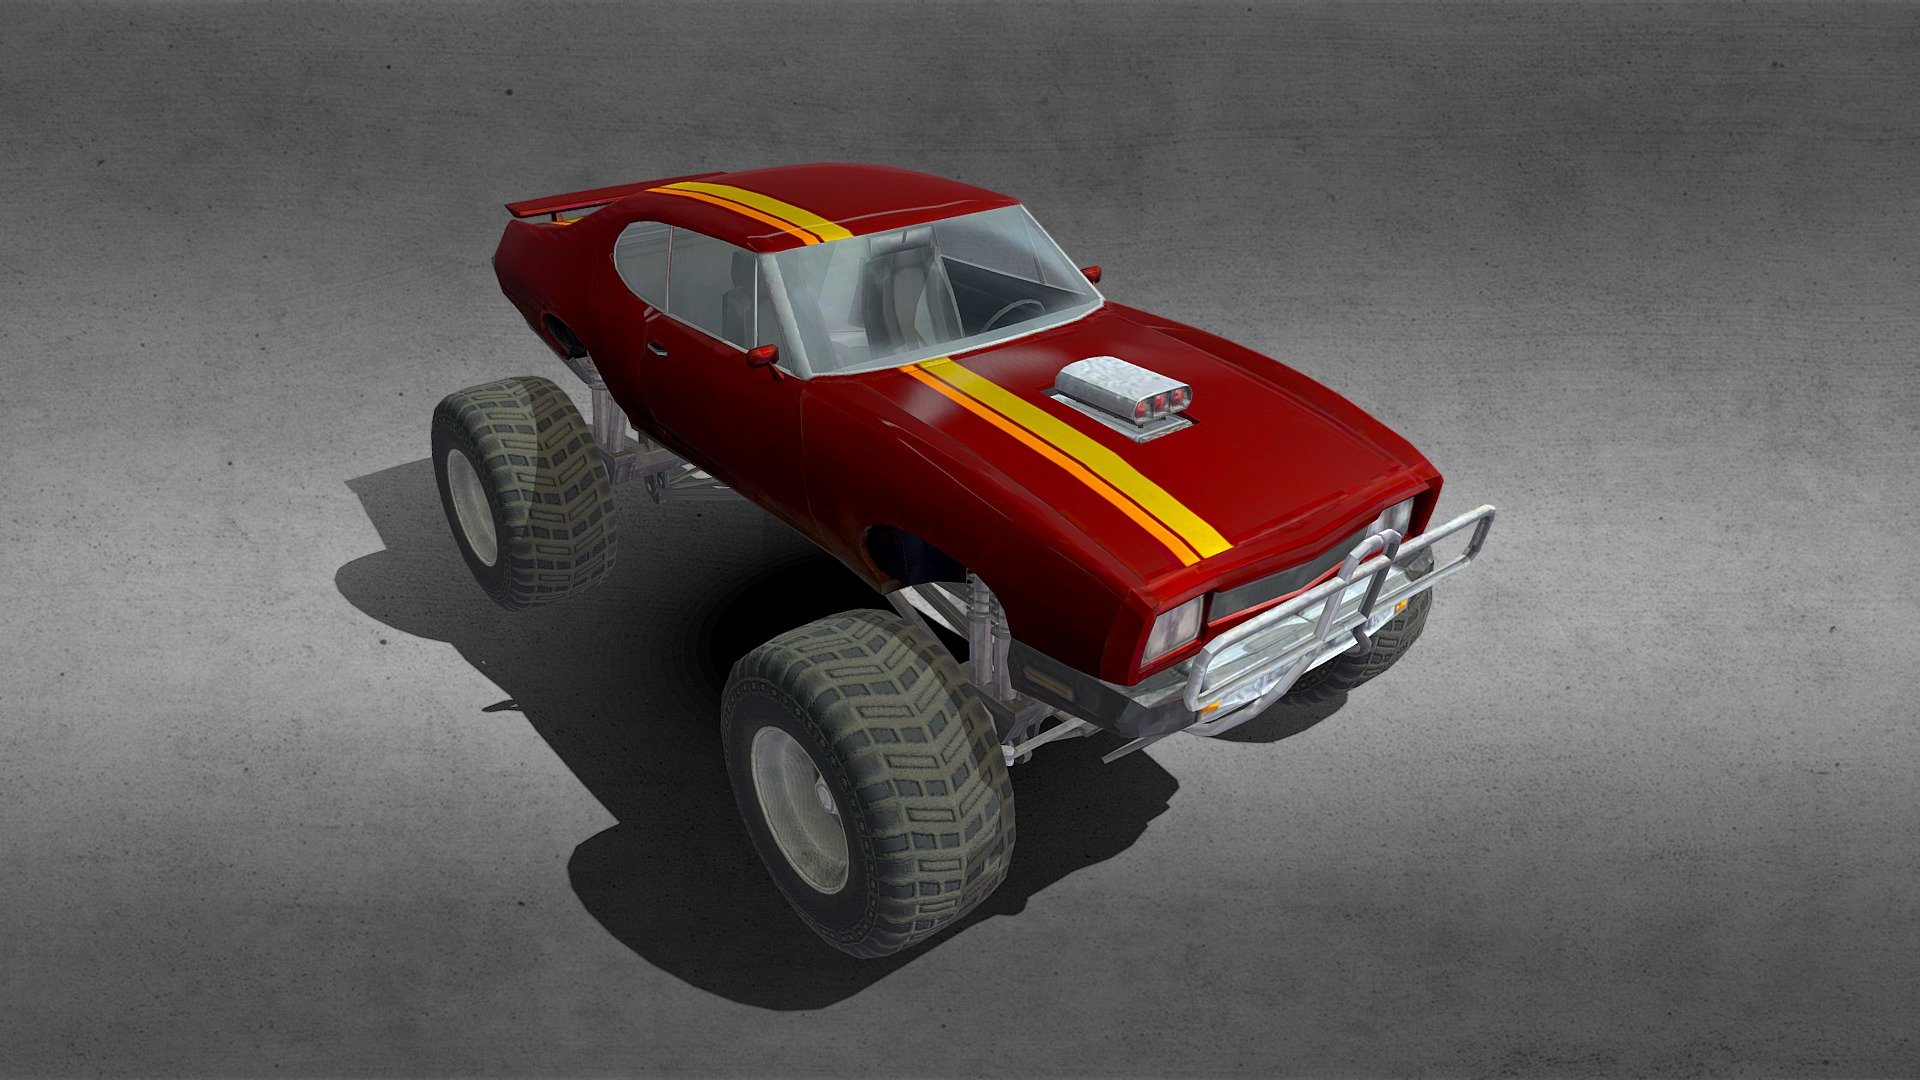 a model of a Pontiac GTO monster car/Big Wheel - Pontiac GTO Monster Car - 3D model by deklox 3d model